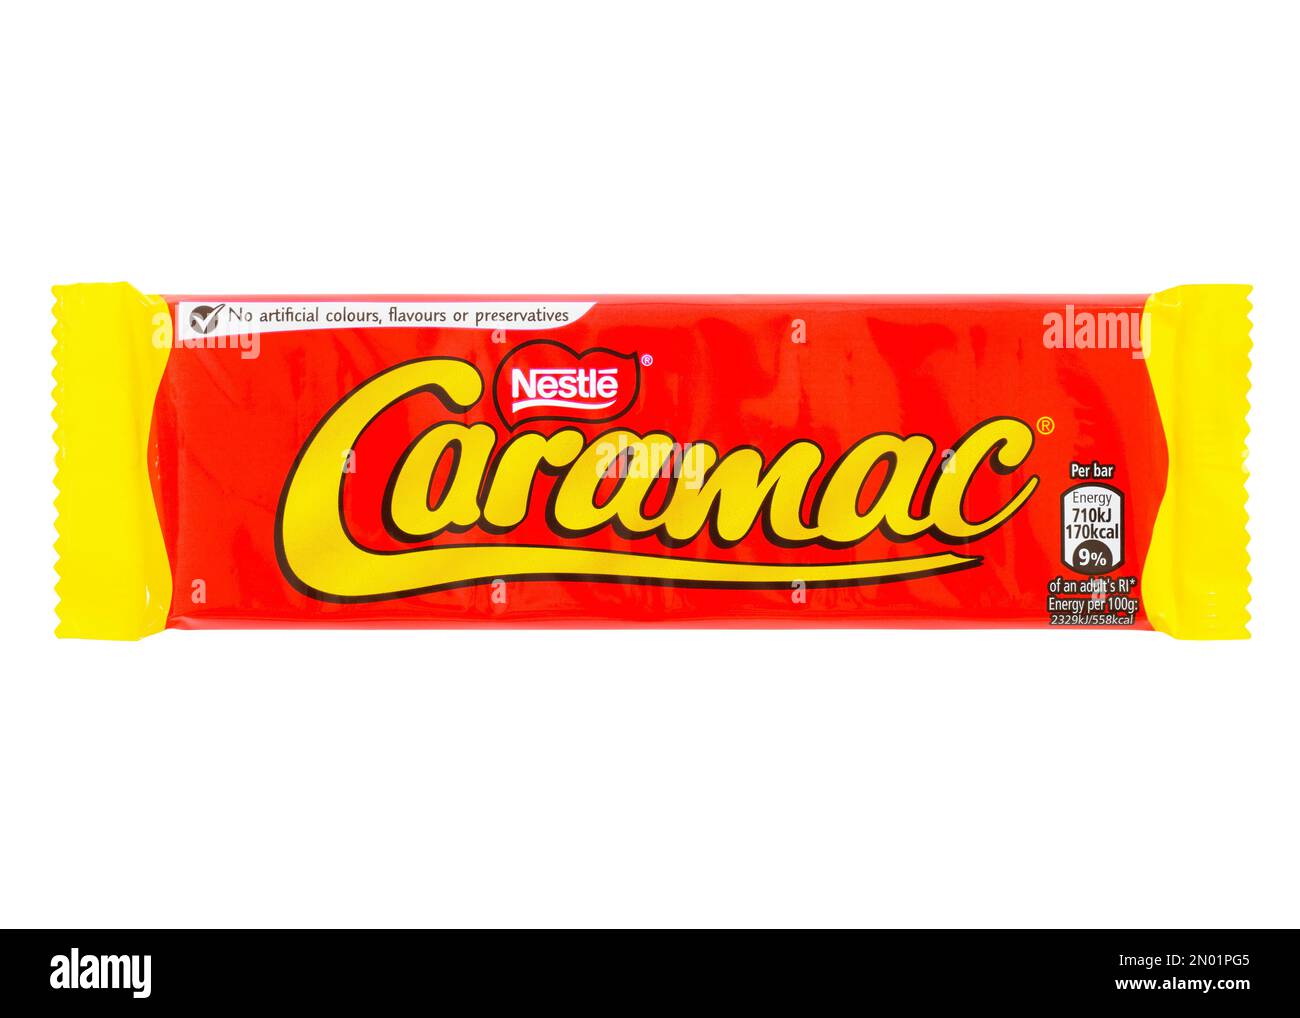 Caramac Chocolate Bar Stock Photo